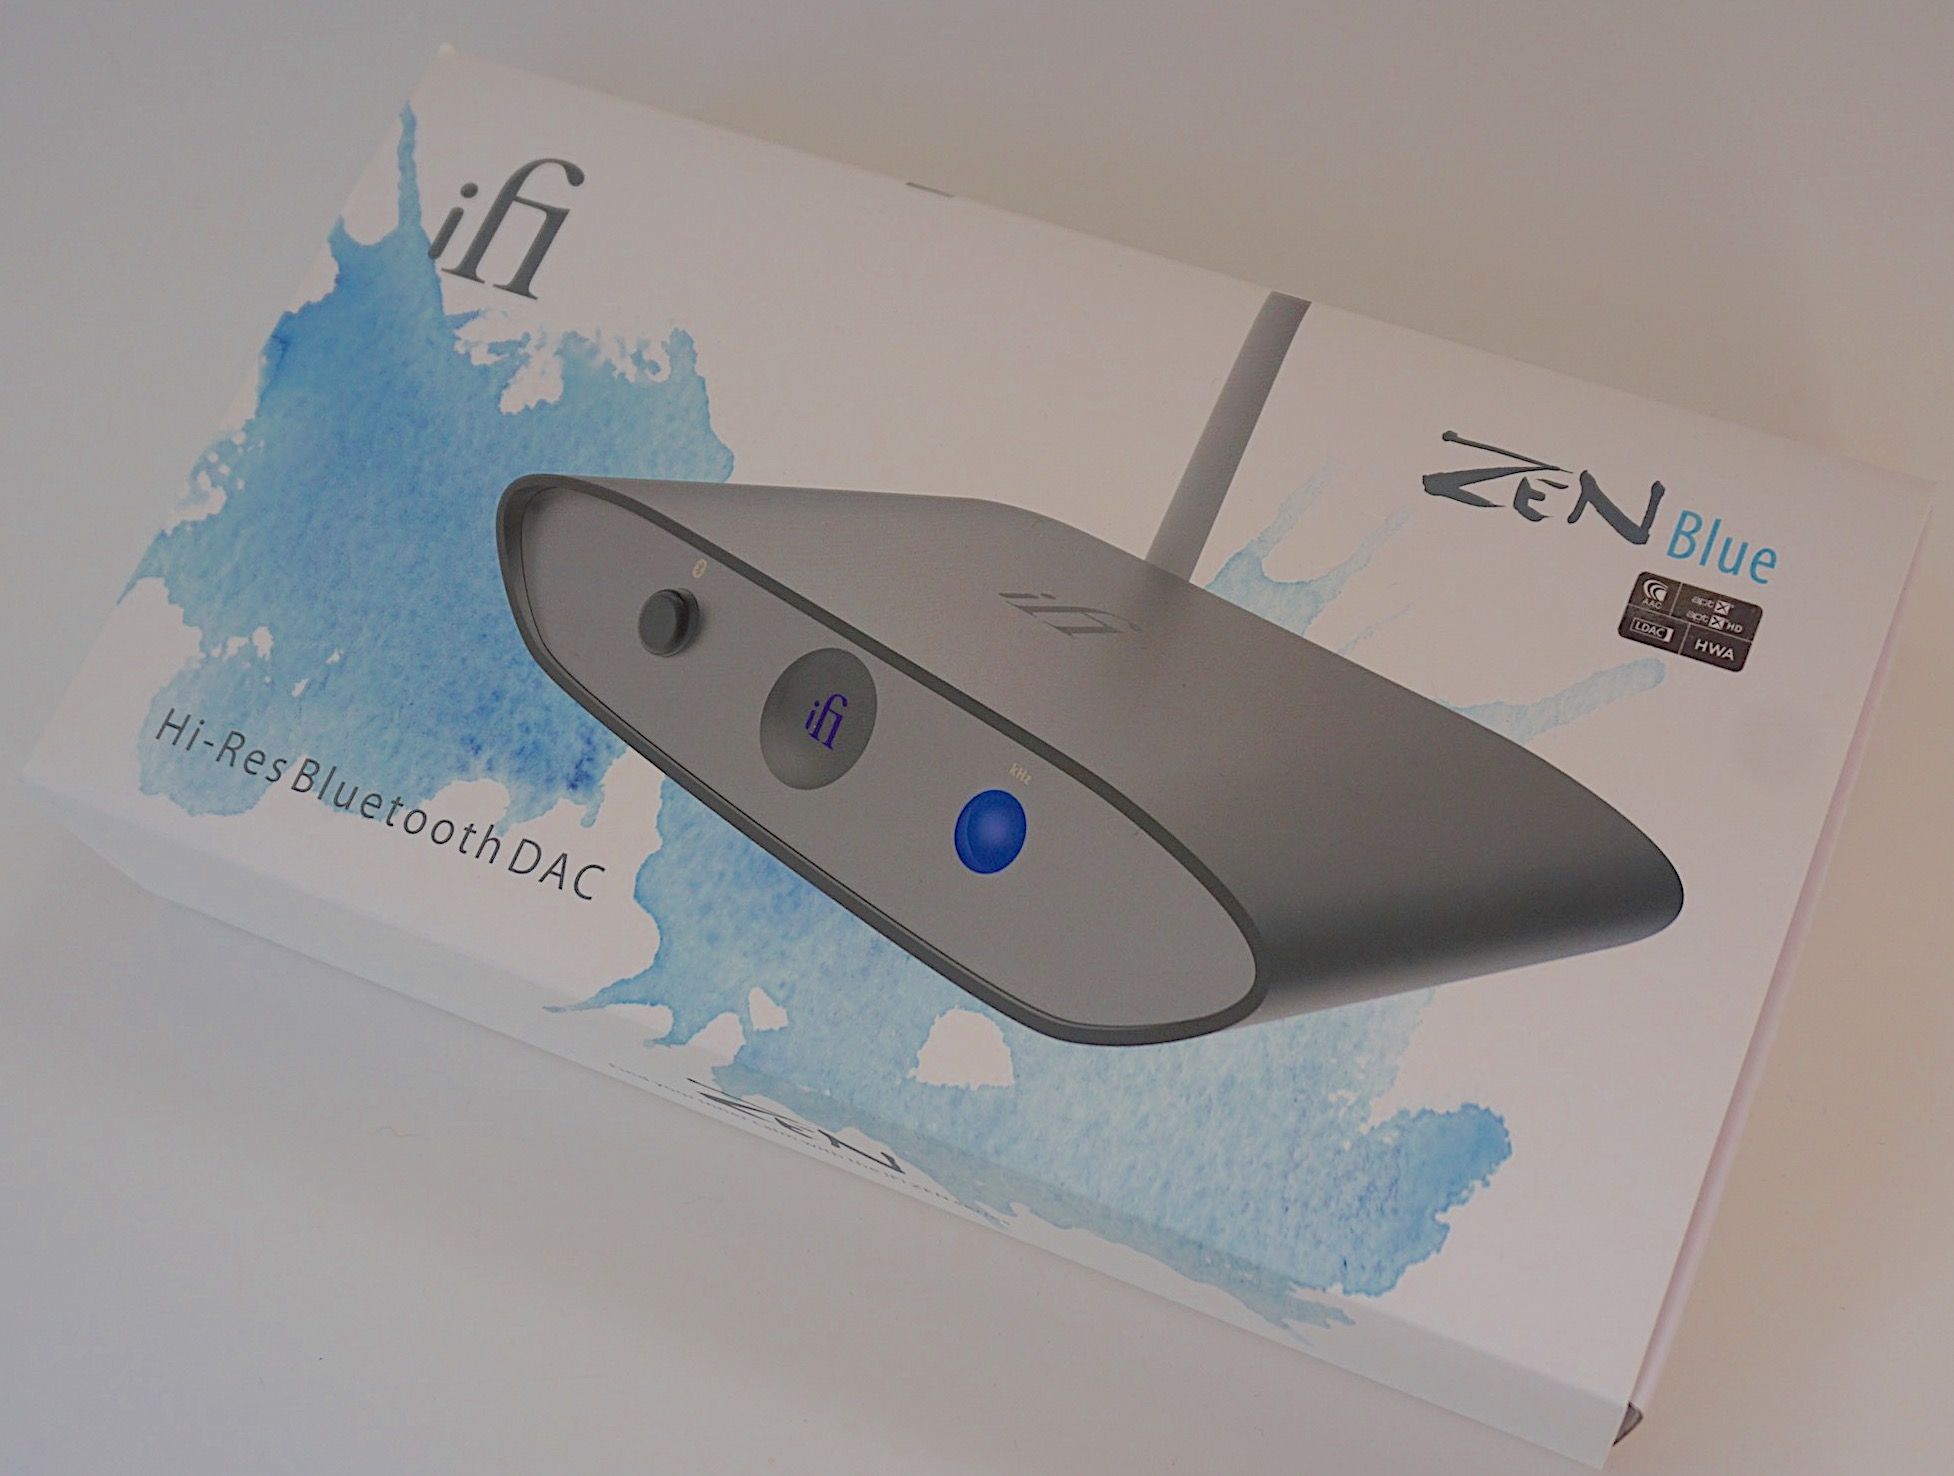 Zen Blue Bluetooth DAC from iFi 